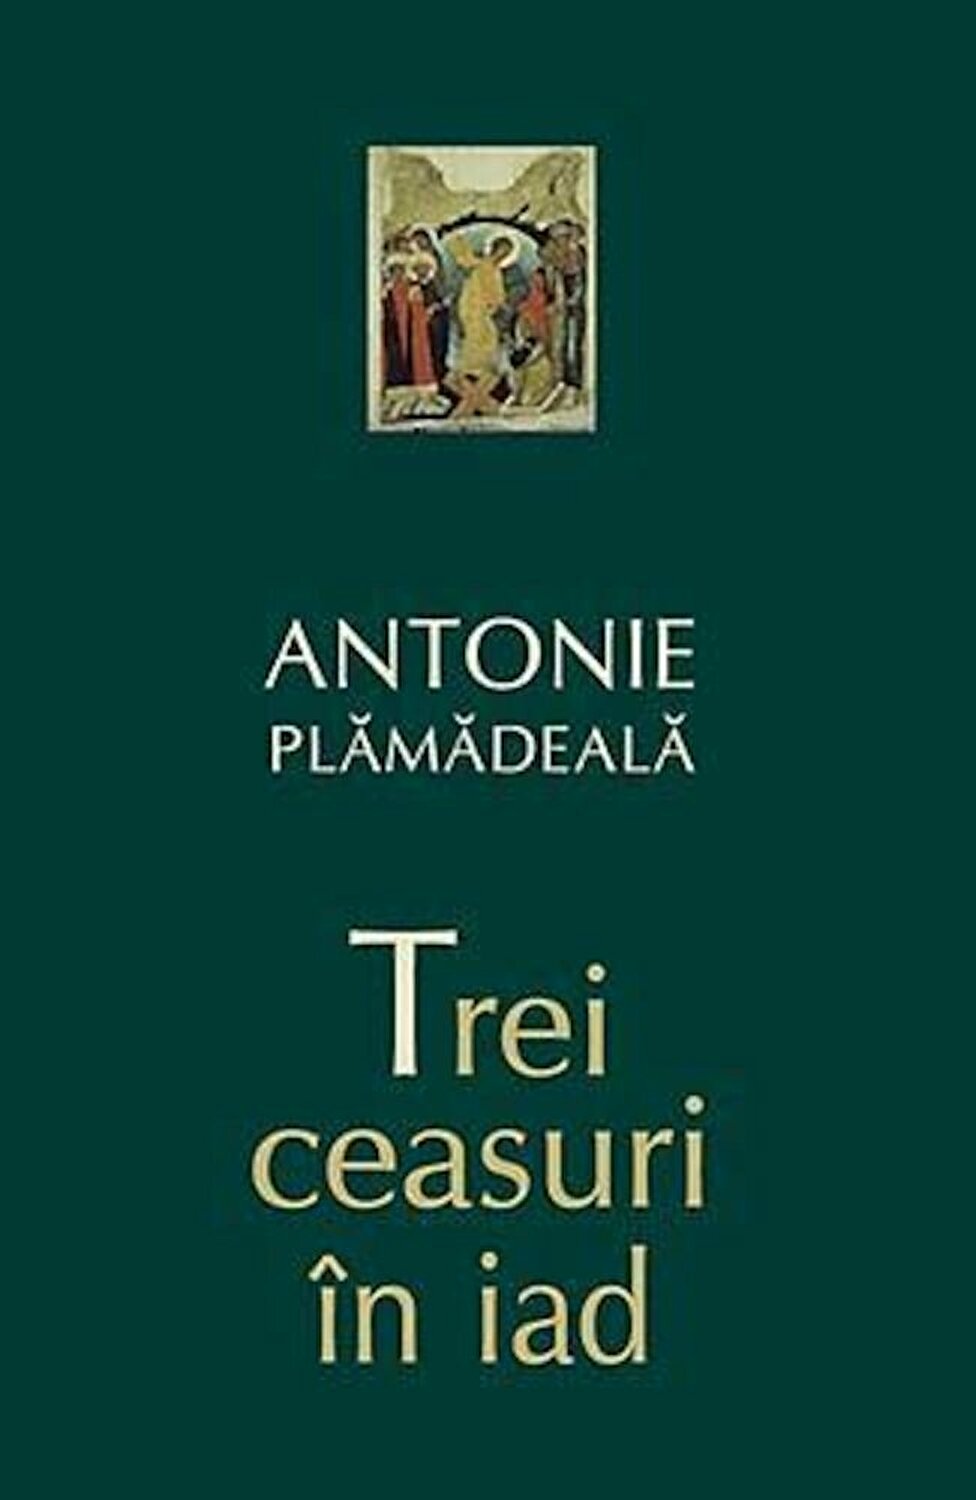 PDF Trei ceasuri in iad | Antonie Plamadeala carturesti.ro Carte